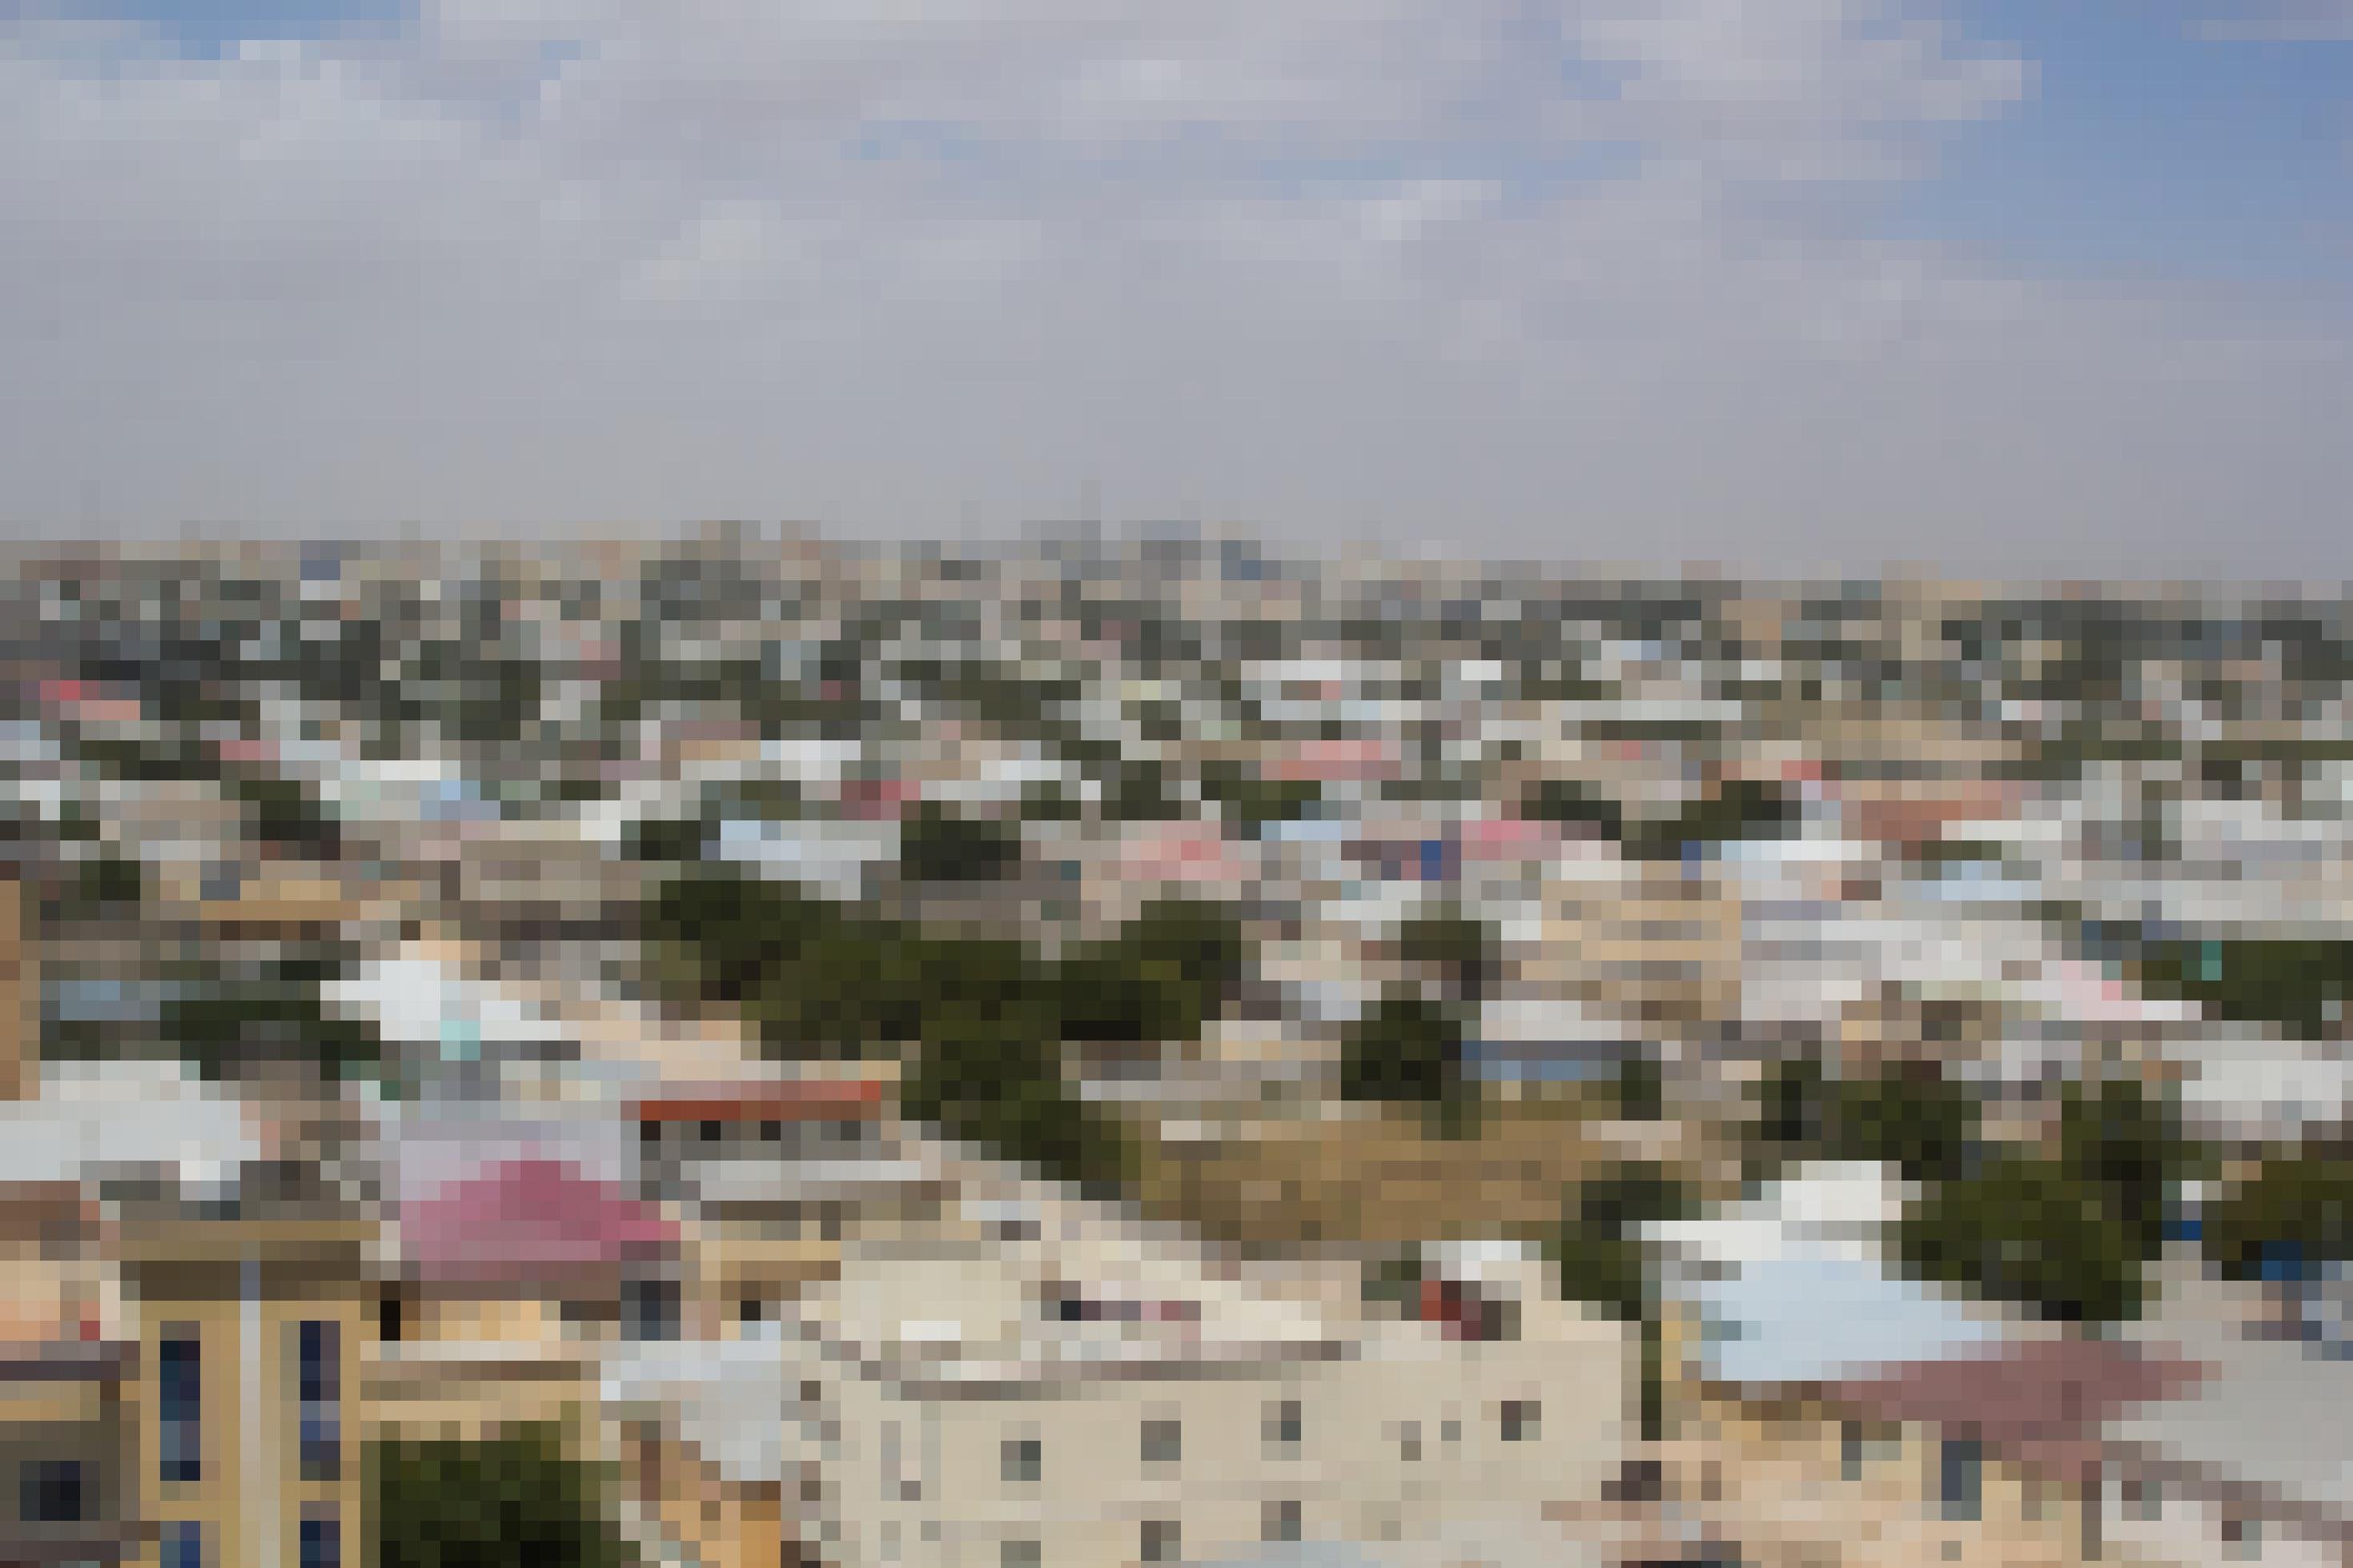 Ein Blick über die Dächer der somalischen Hauptstadt, ein Häusermeer. Die Stadt wirkt bunt, weil viele Dächer aus rotem oder blauen Wellblech bestehen –  Außerdem gibt es viele Bäume. Die Stadt wirkt einladend und freundlich, trotz ihres schlechten Rufs. Am Horizont zeichnet sich eine Skyline ab.